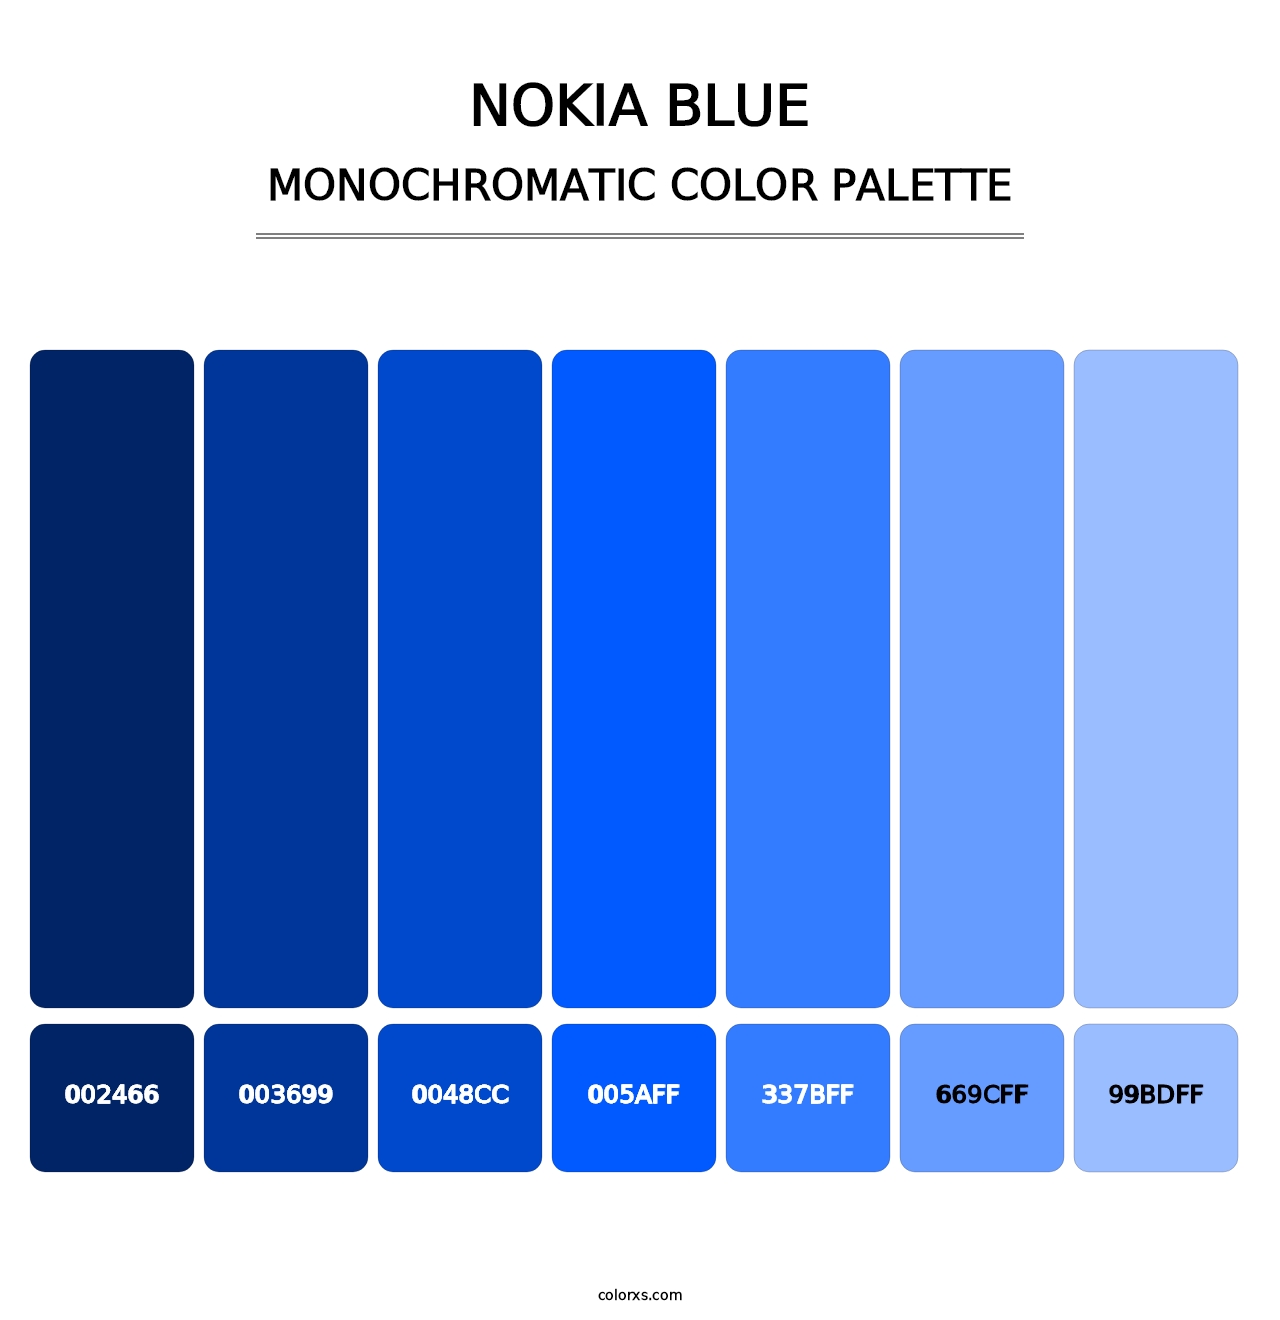 Nokia Blue - Monochromatic Color Palette